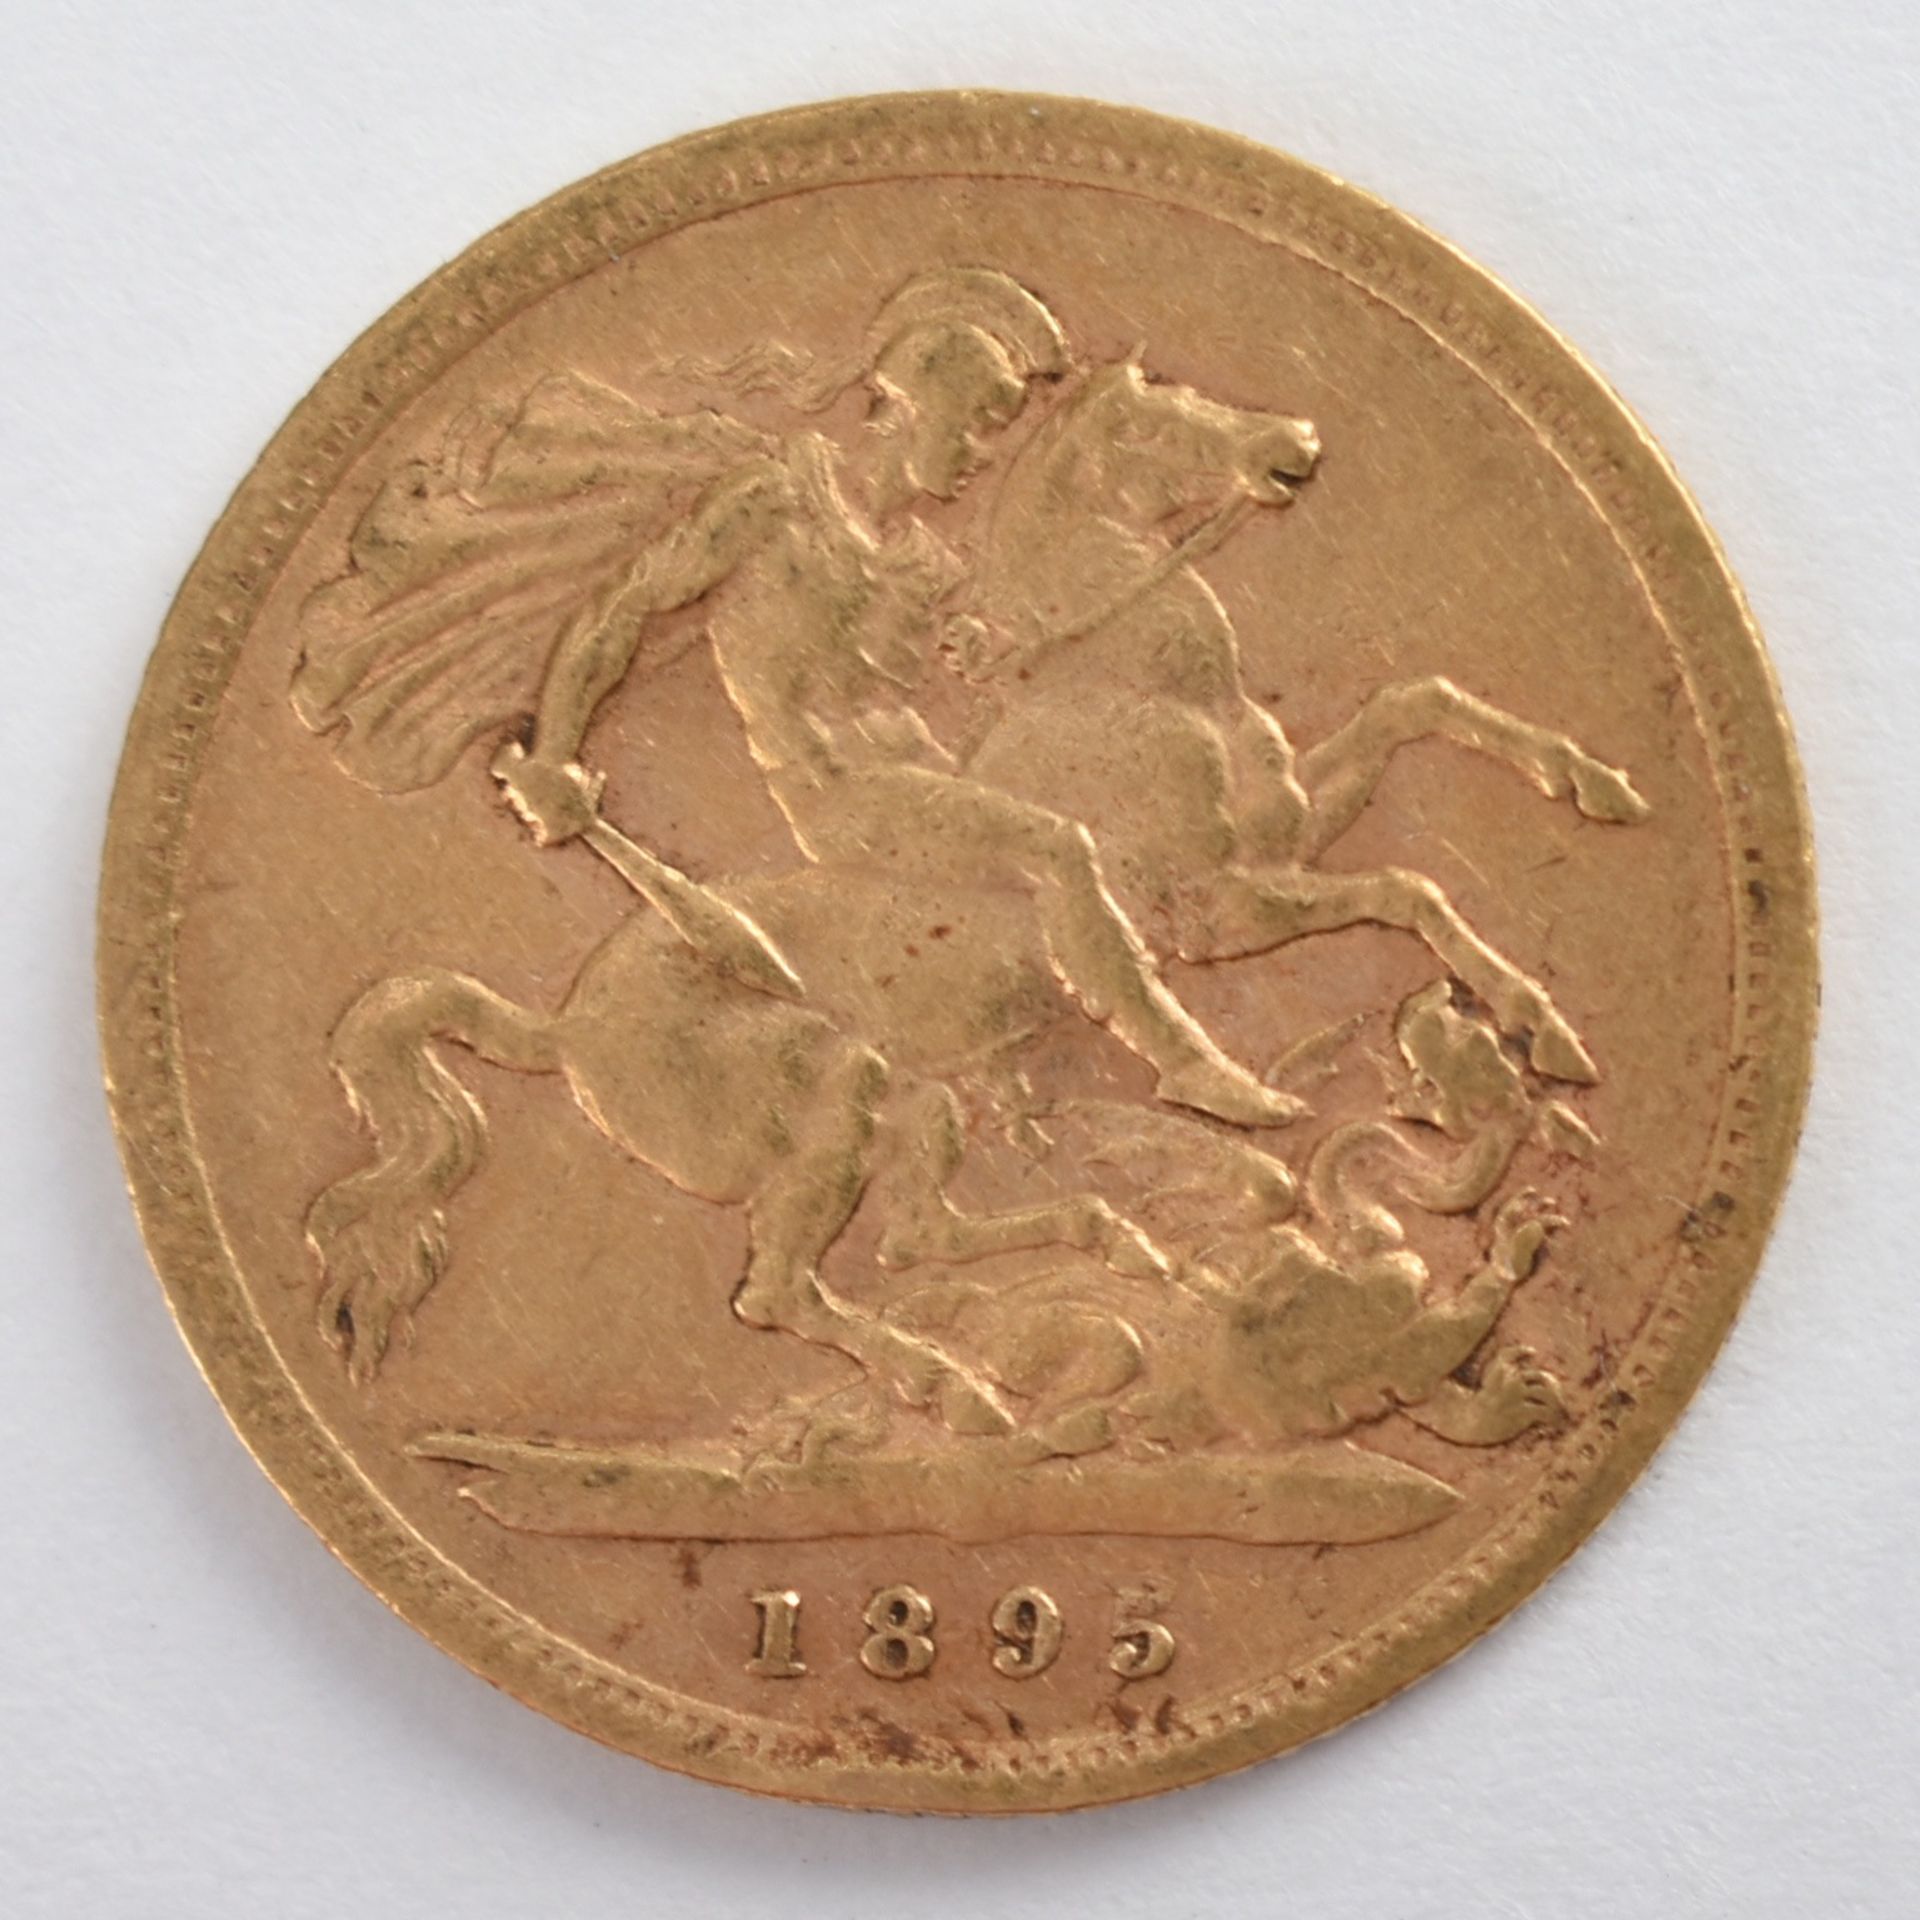 Goldmünze Großbritannien 1895 1/2 Sovereign - 1/2 Pfund in Gold, 3,994 g, 916/1000, D ca. 19,3 mm, - Bild 2 aus 3